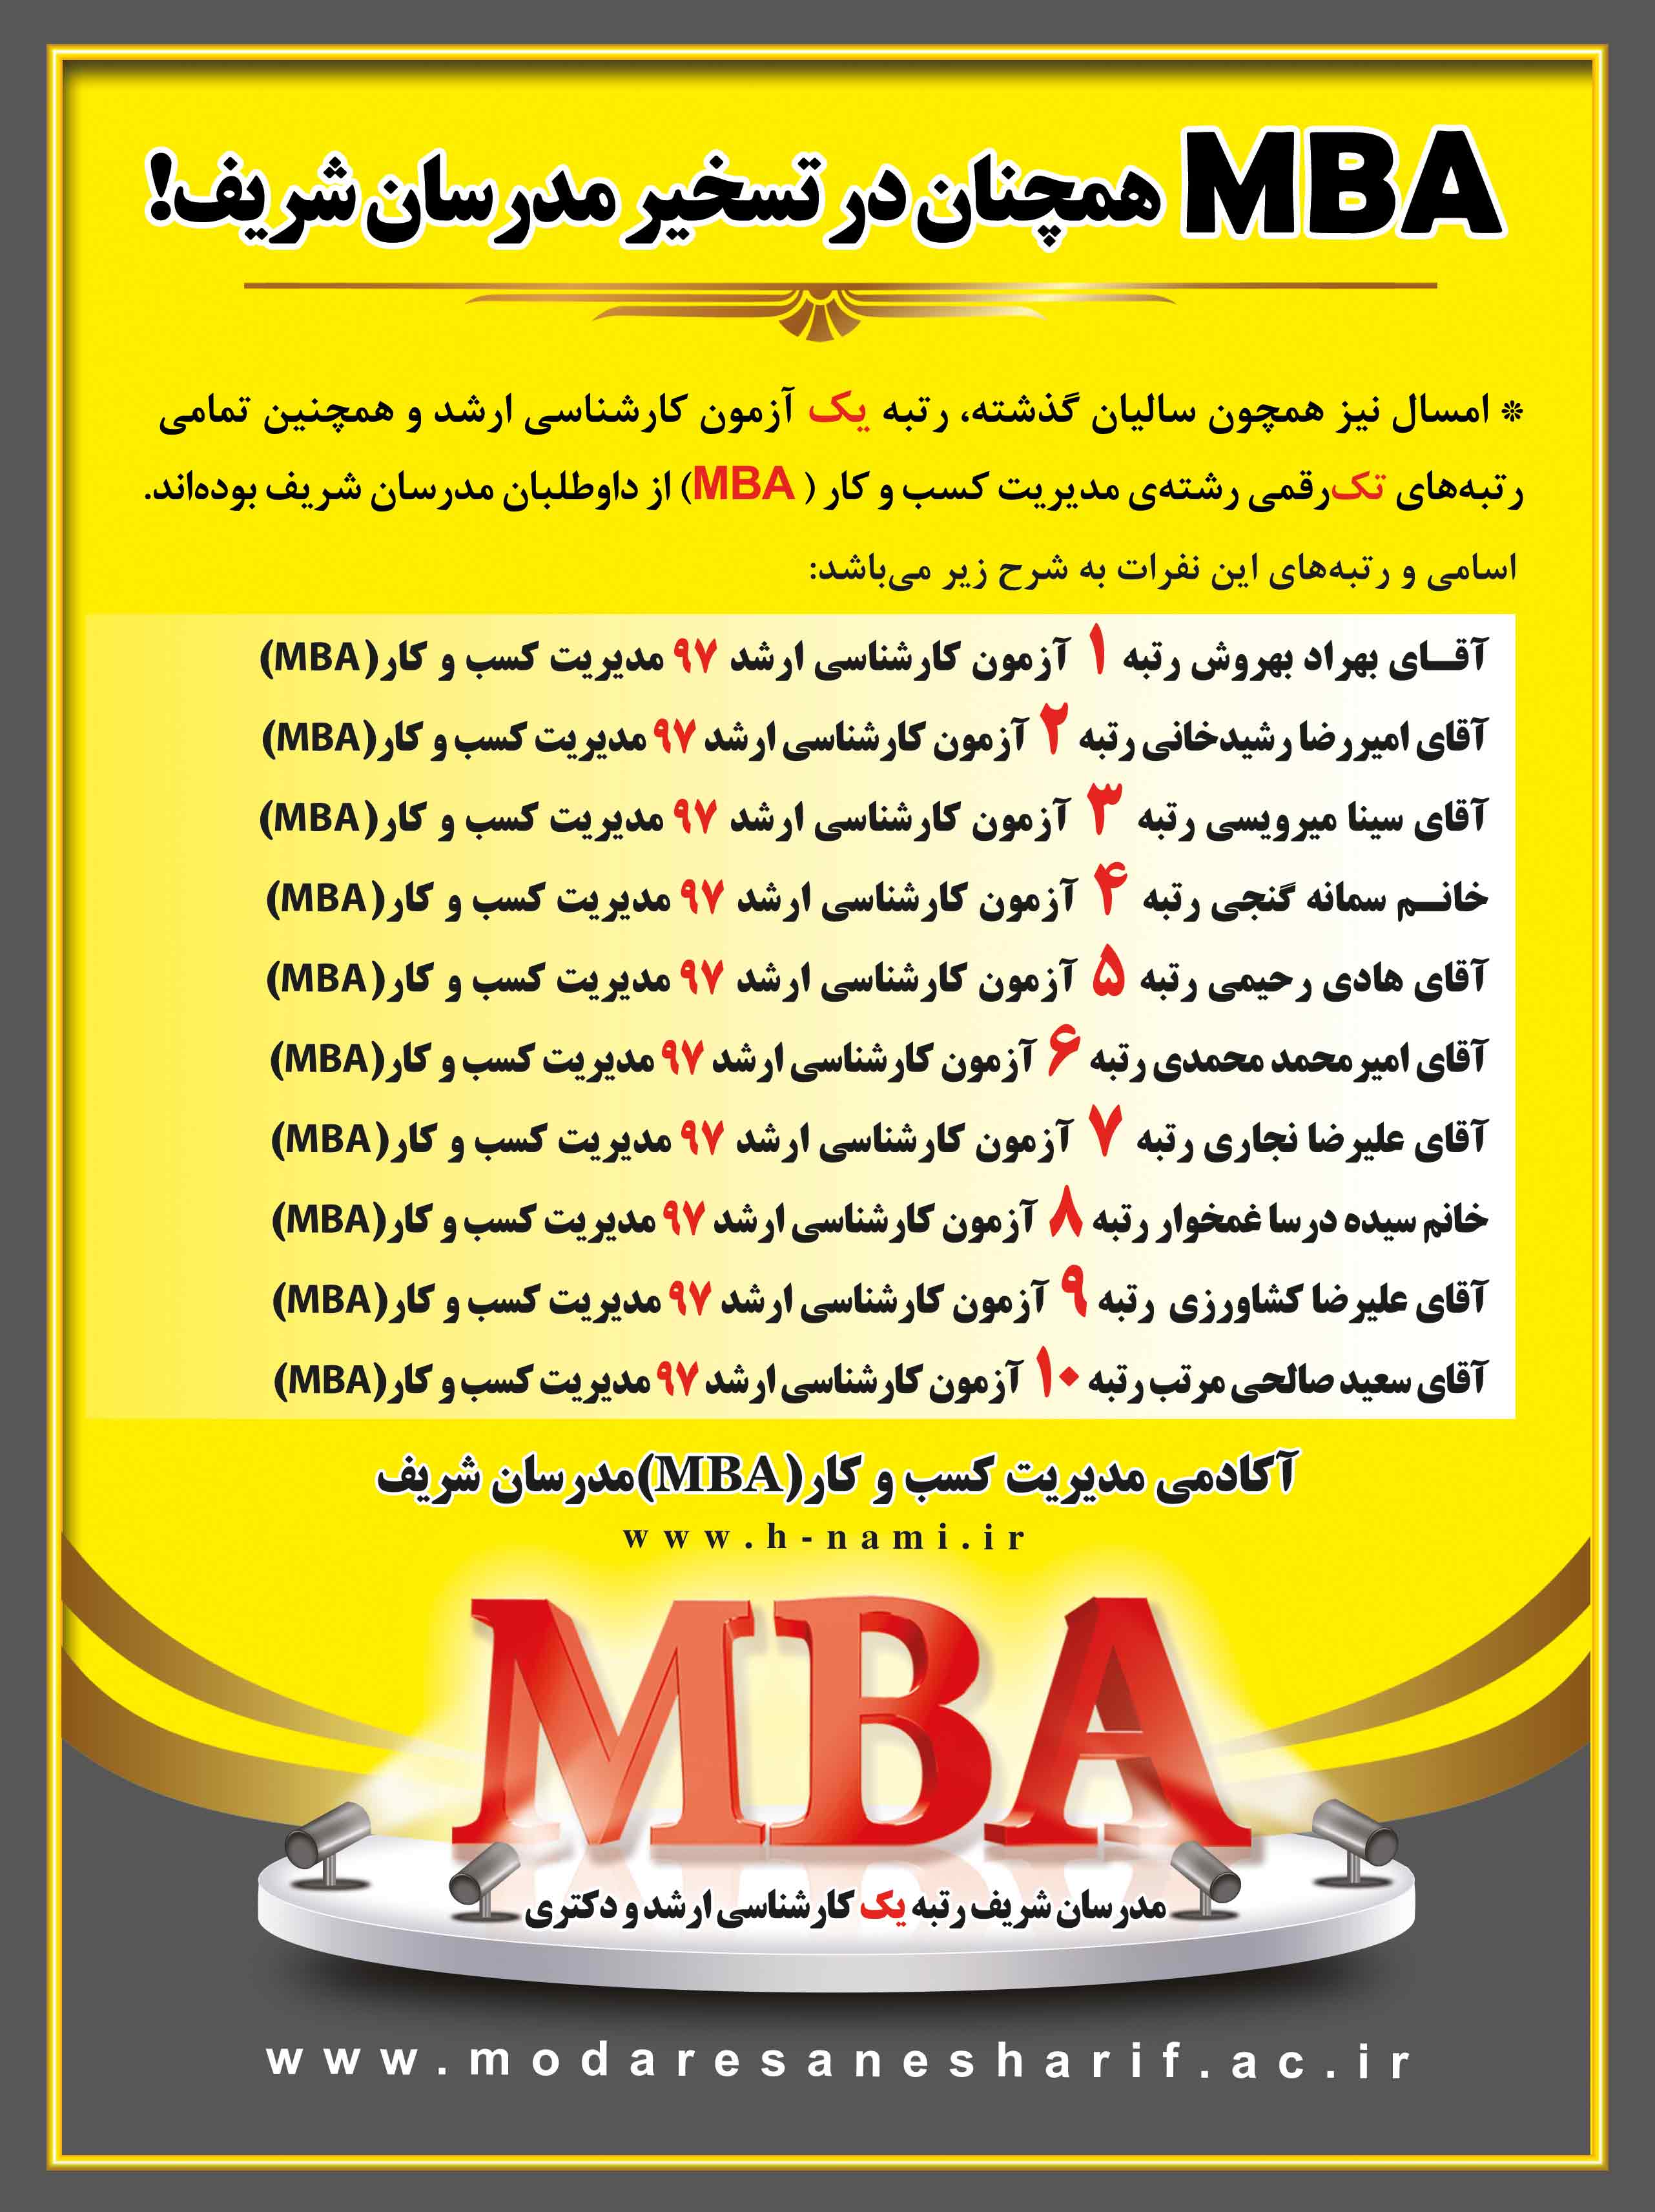 رتبه های برتر رشته مدیریت کسب و کار مدرسان شریف در سال 97(MBA)